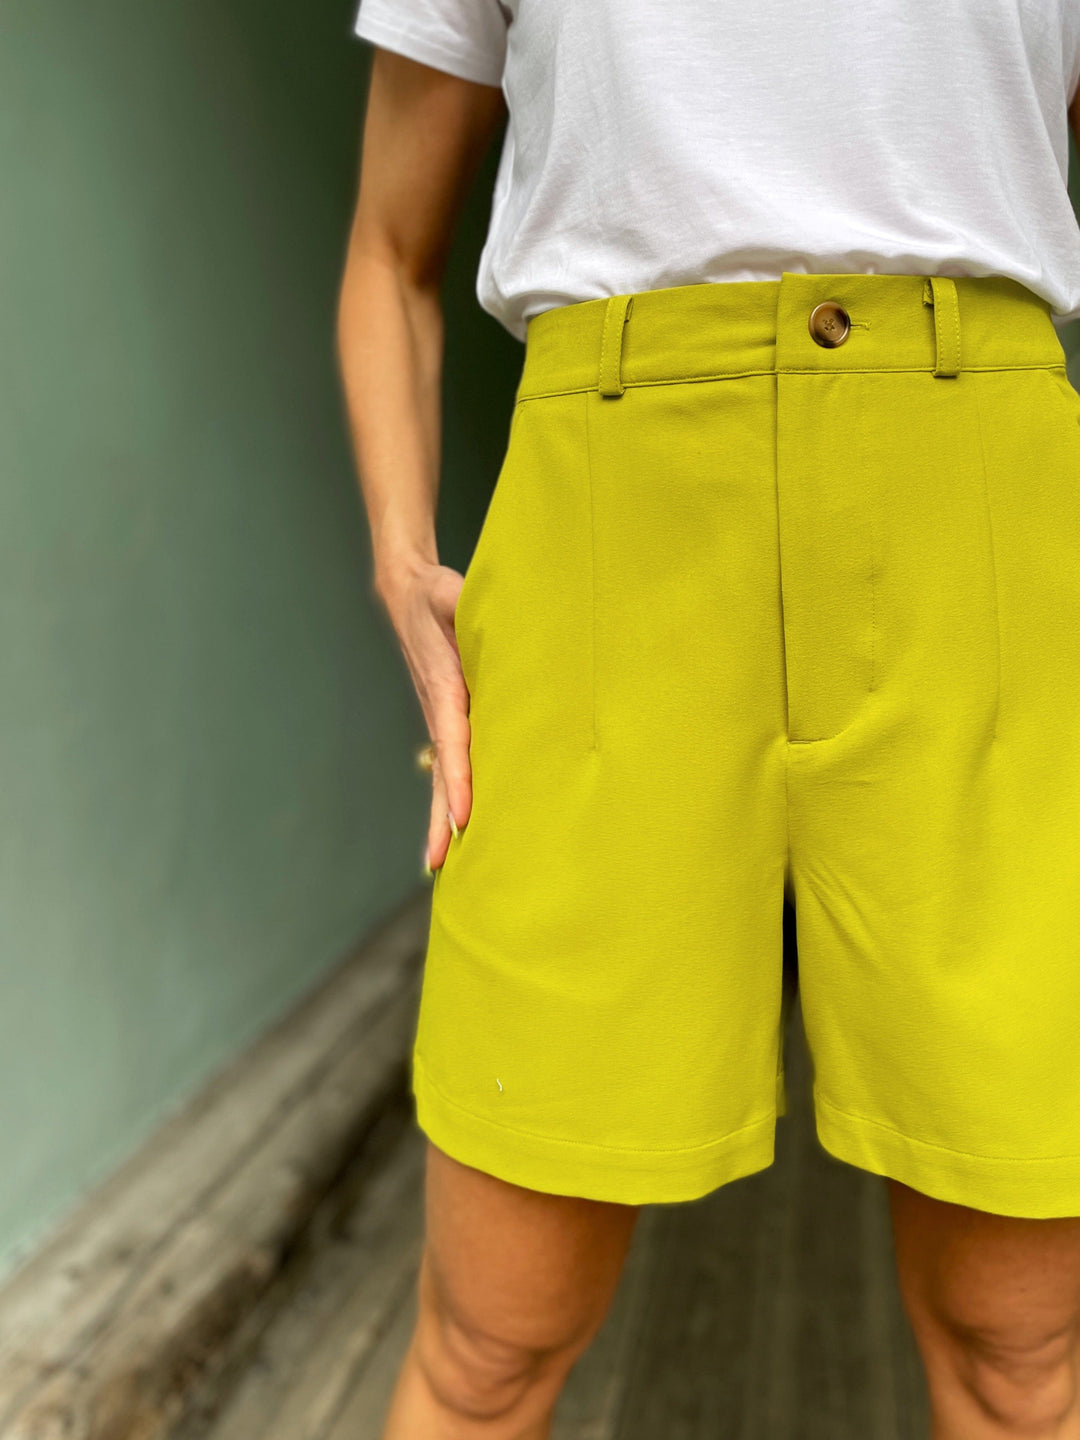 Dianas Vintage shorts Frida shorts med gylf - lime